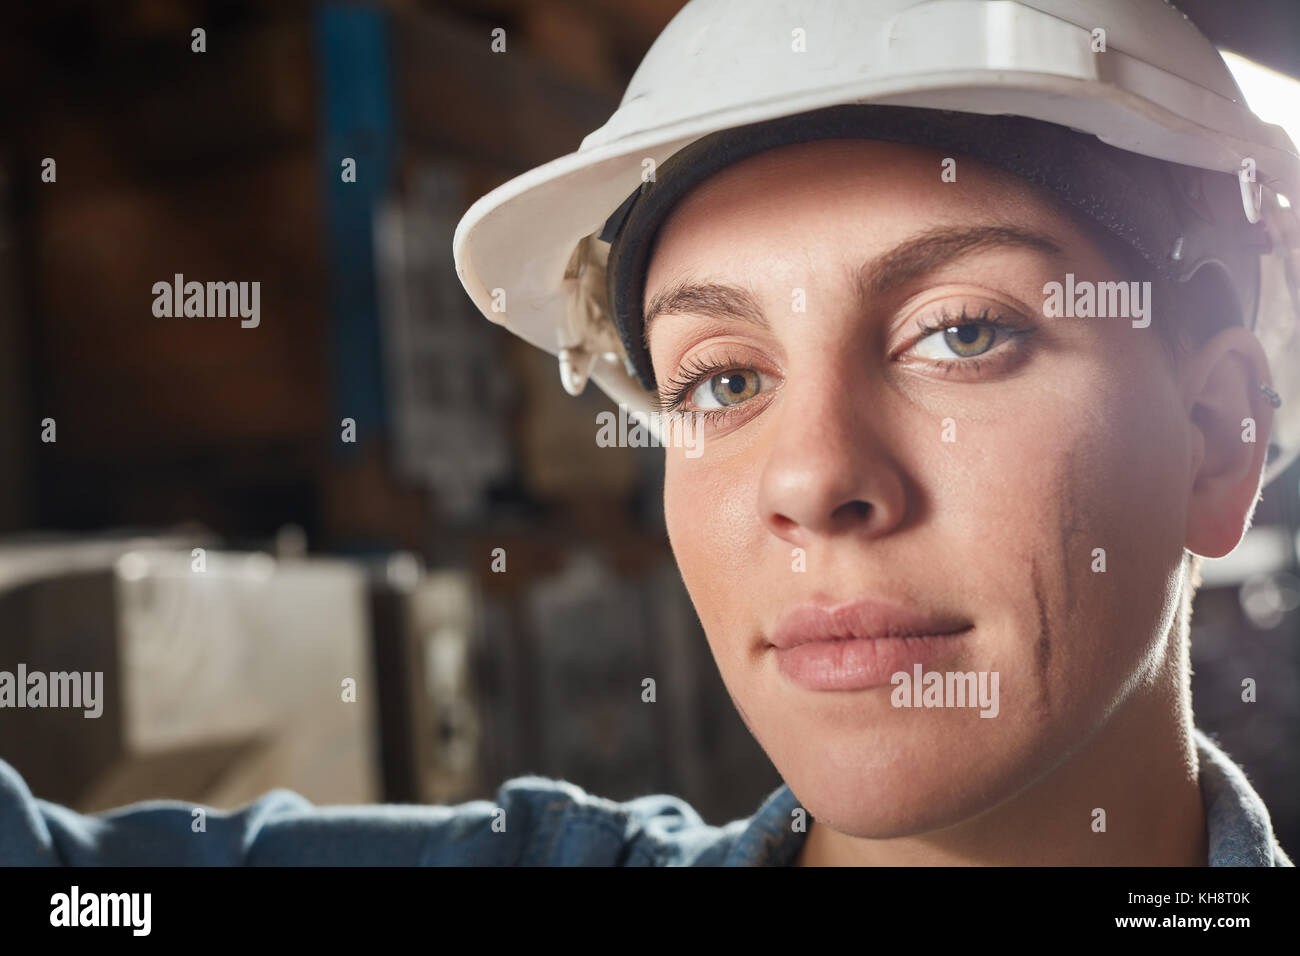 Femme en tant que stagiaire ou apprenti de métallier en métallurgie factory Banque D'Images